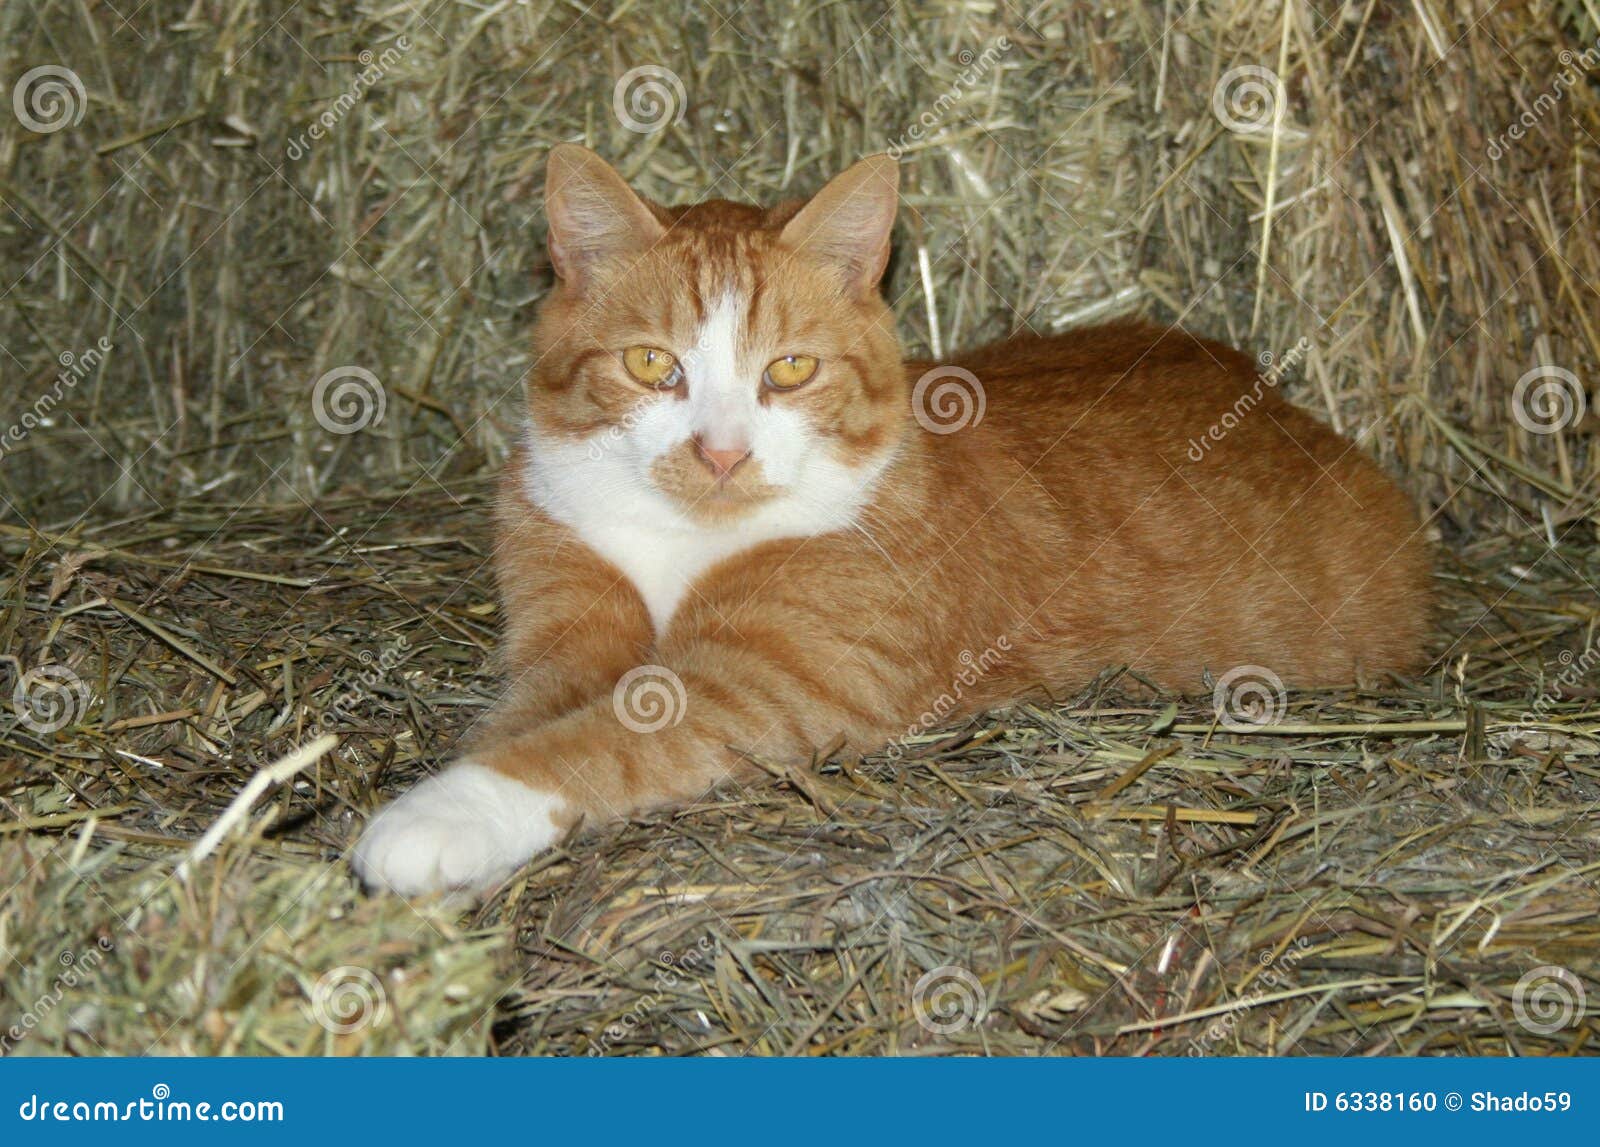 orange tom cat